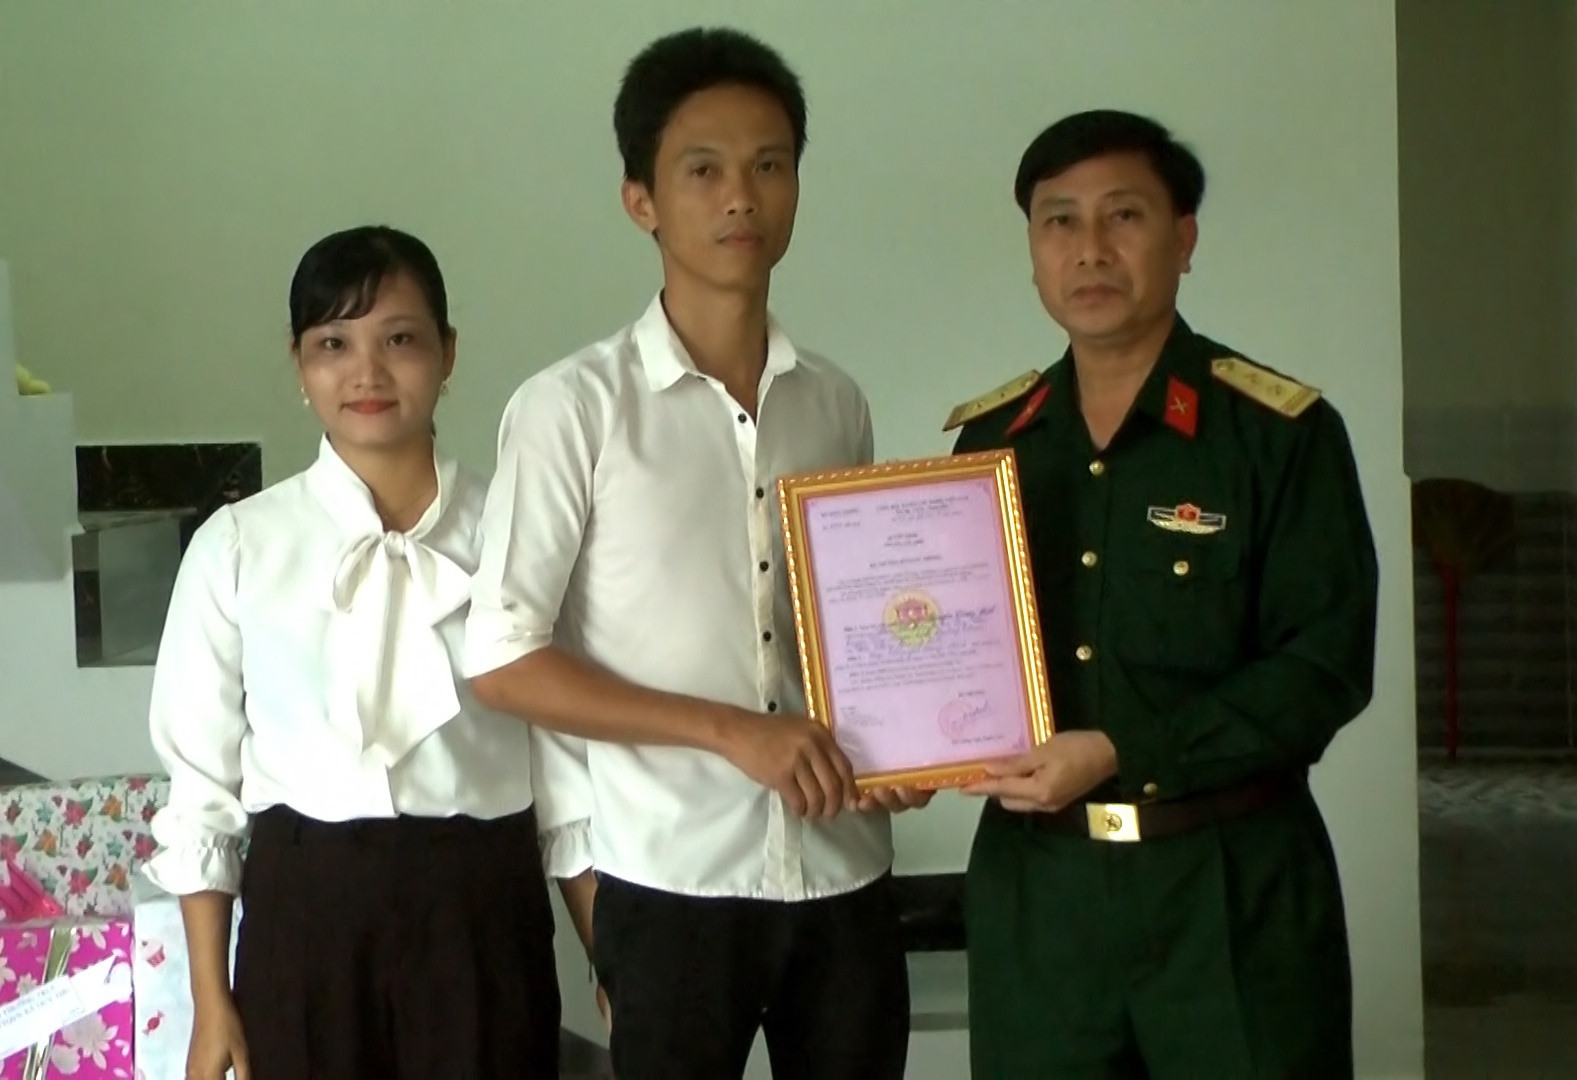 Trao quyết định của Bộ Quốc phòng về hỗ trợ xây dựng nhà tình nghĩa cho thương binh Nguyễn Công Hát.    Ảnh: T.P